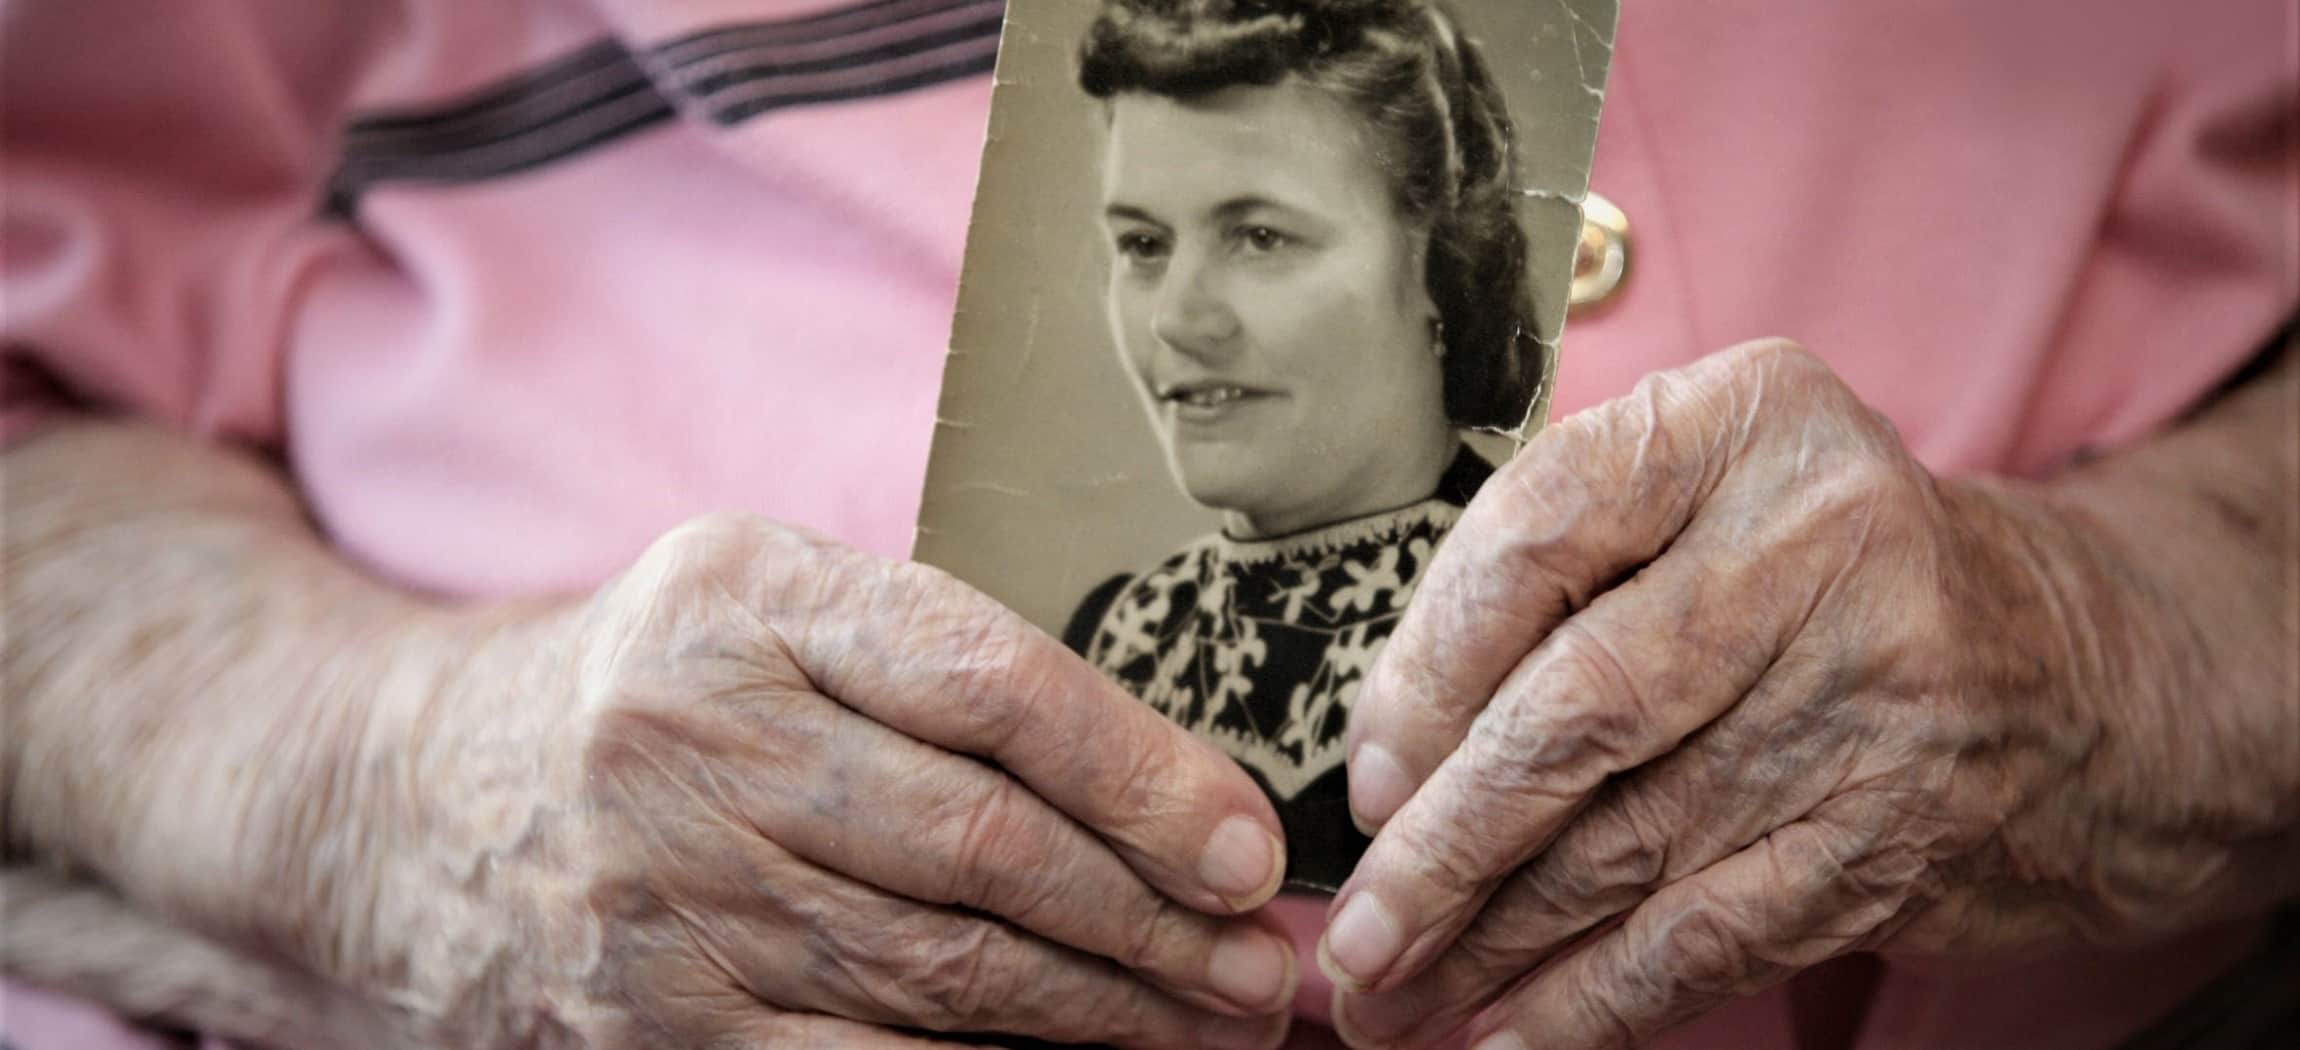 Oude gerimpelde handen houden een klassieke zwart-wit-foto vast, oude vrouw met roze blouse